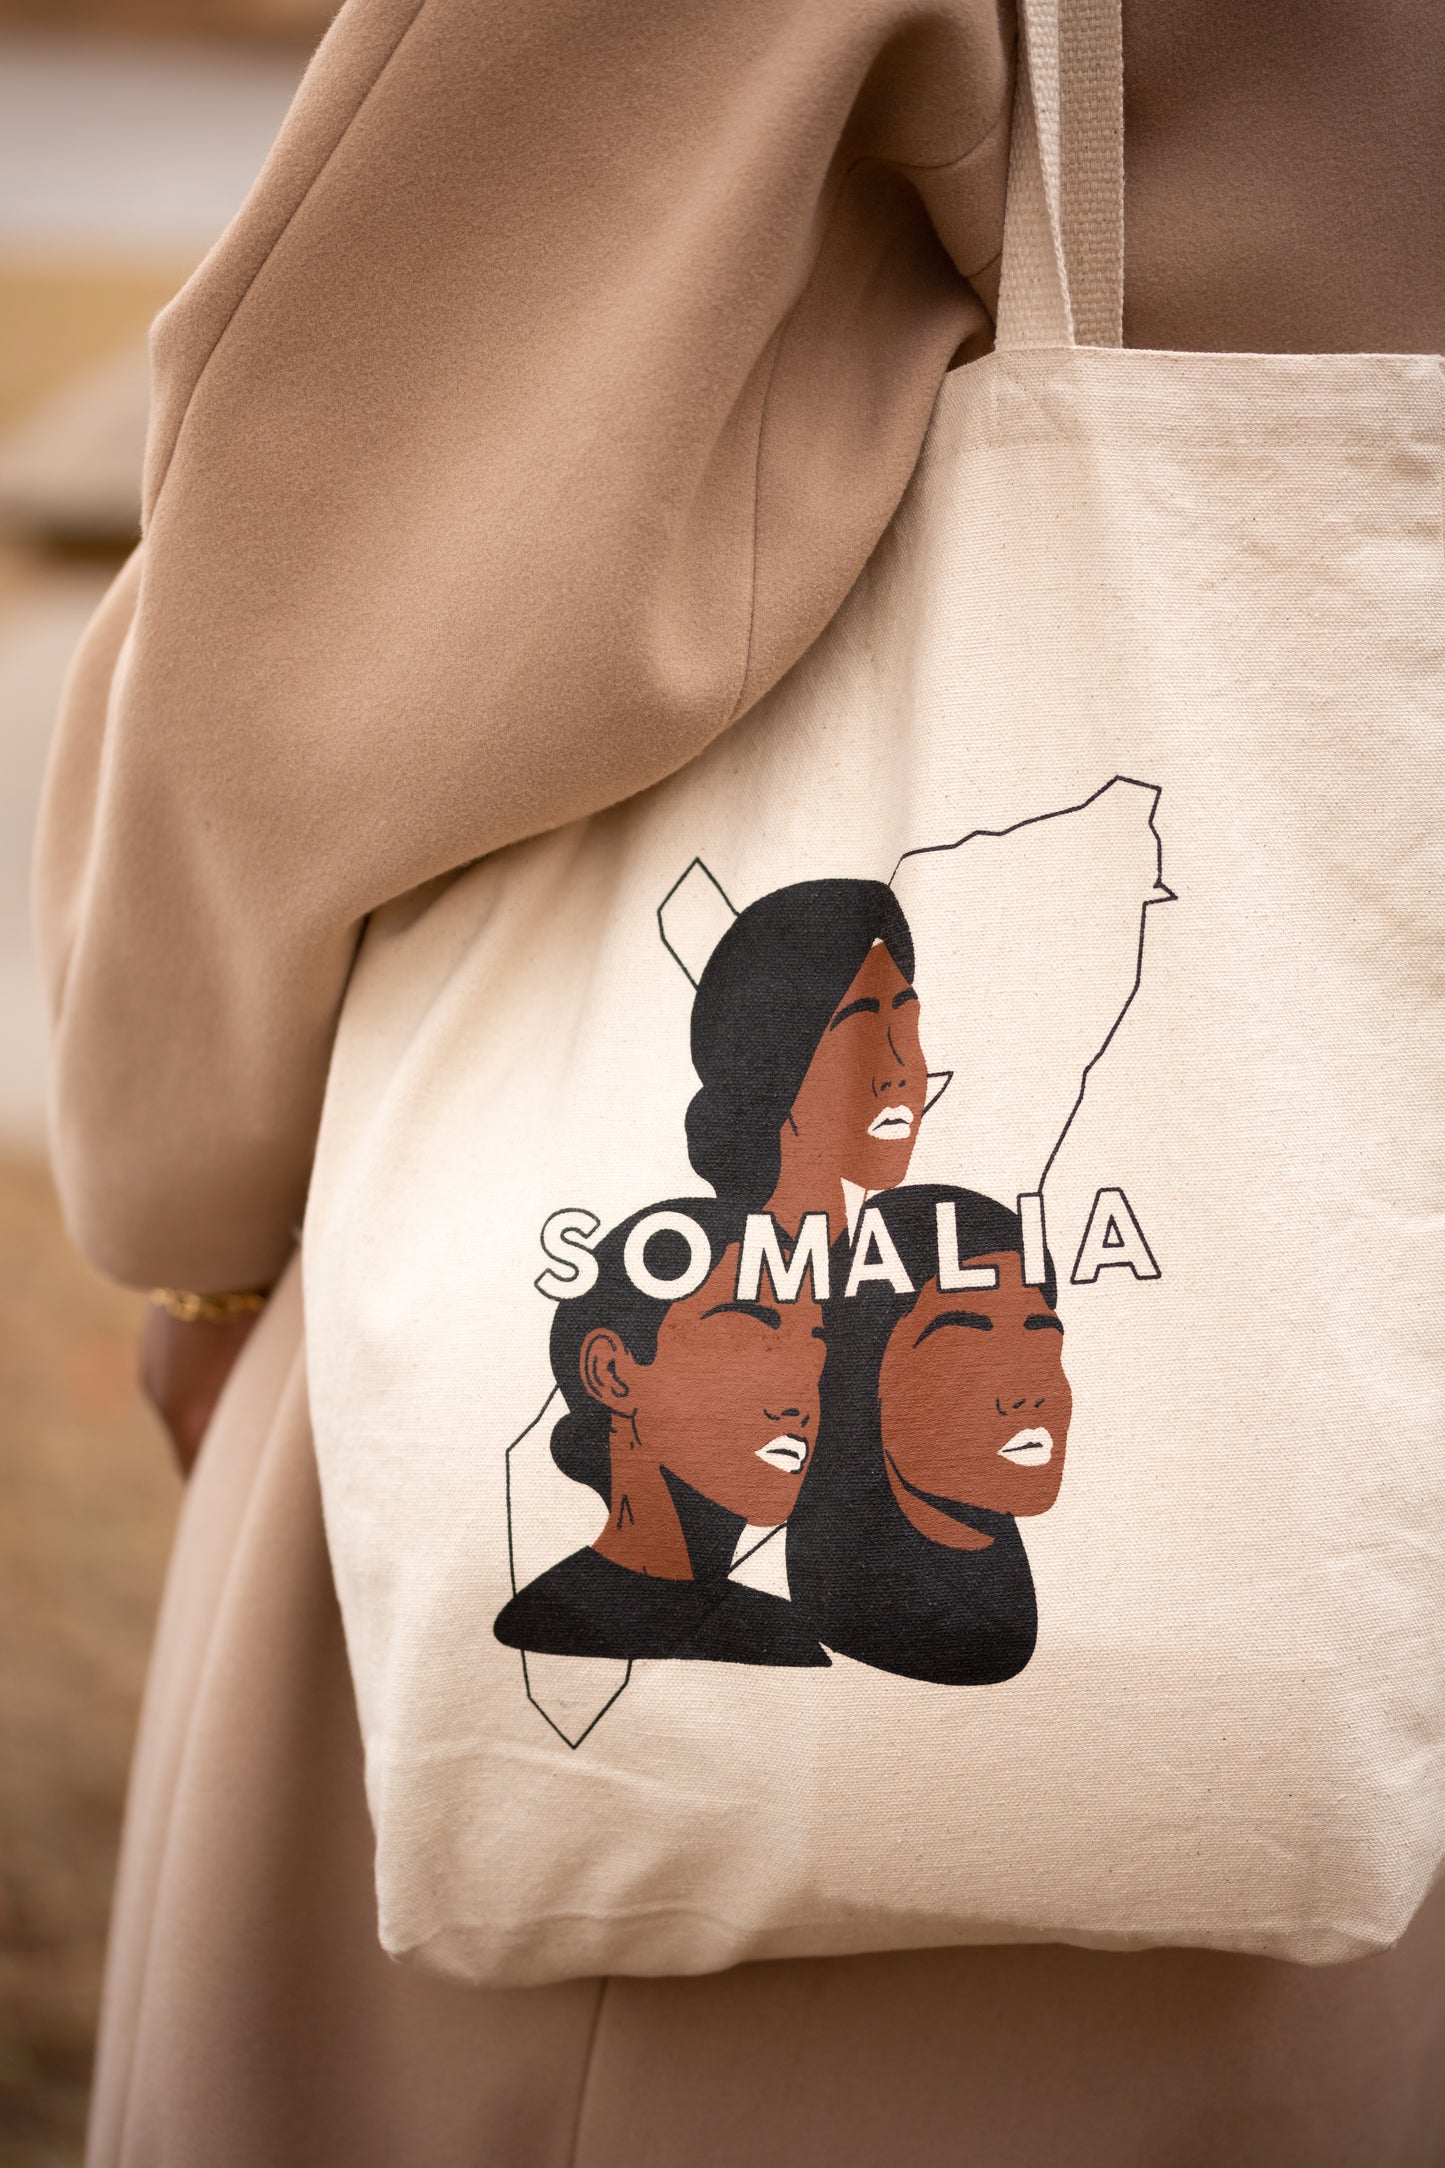 Somalia Tote bag